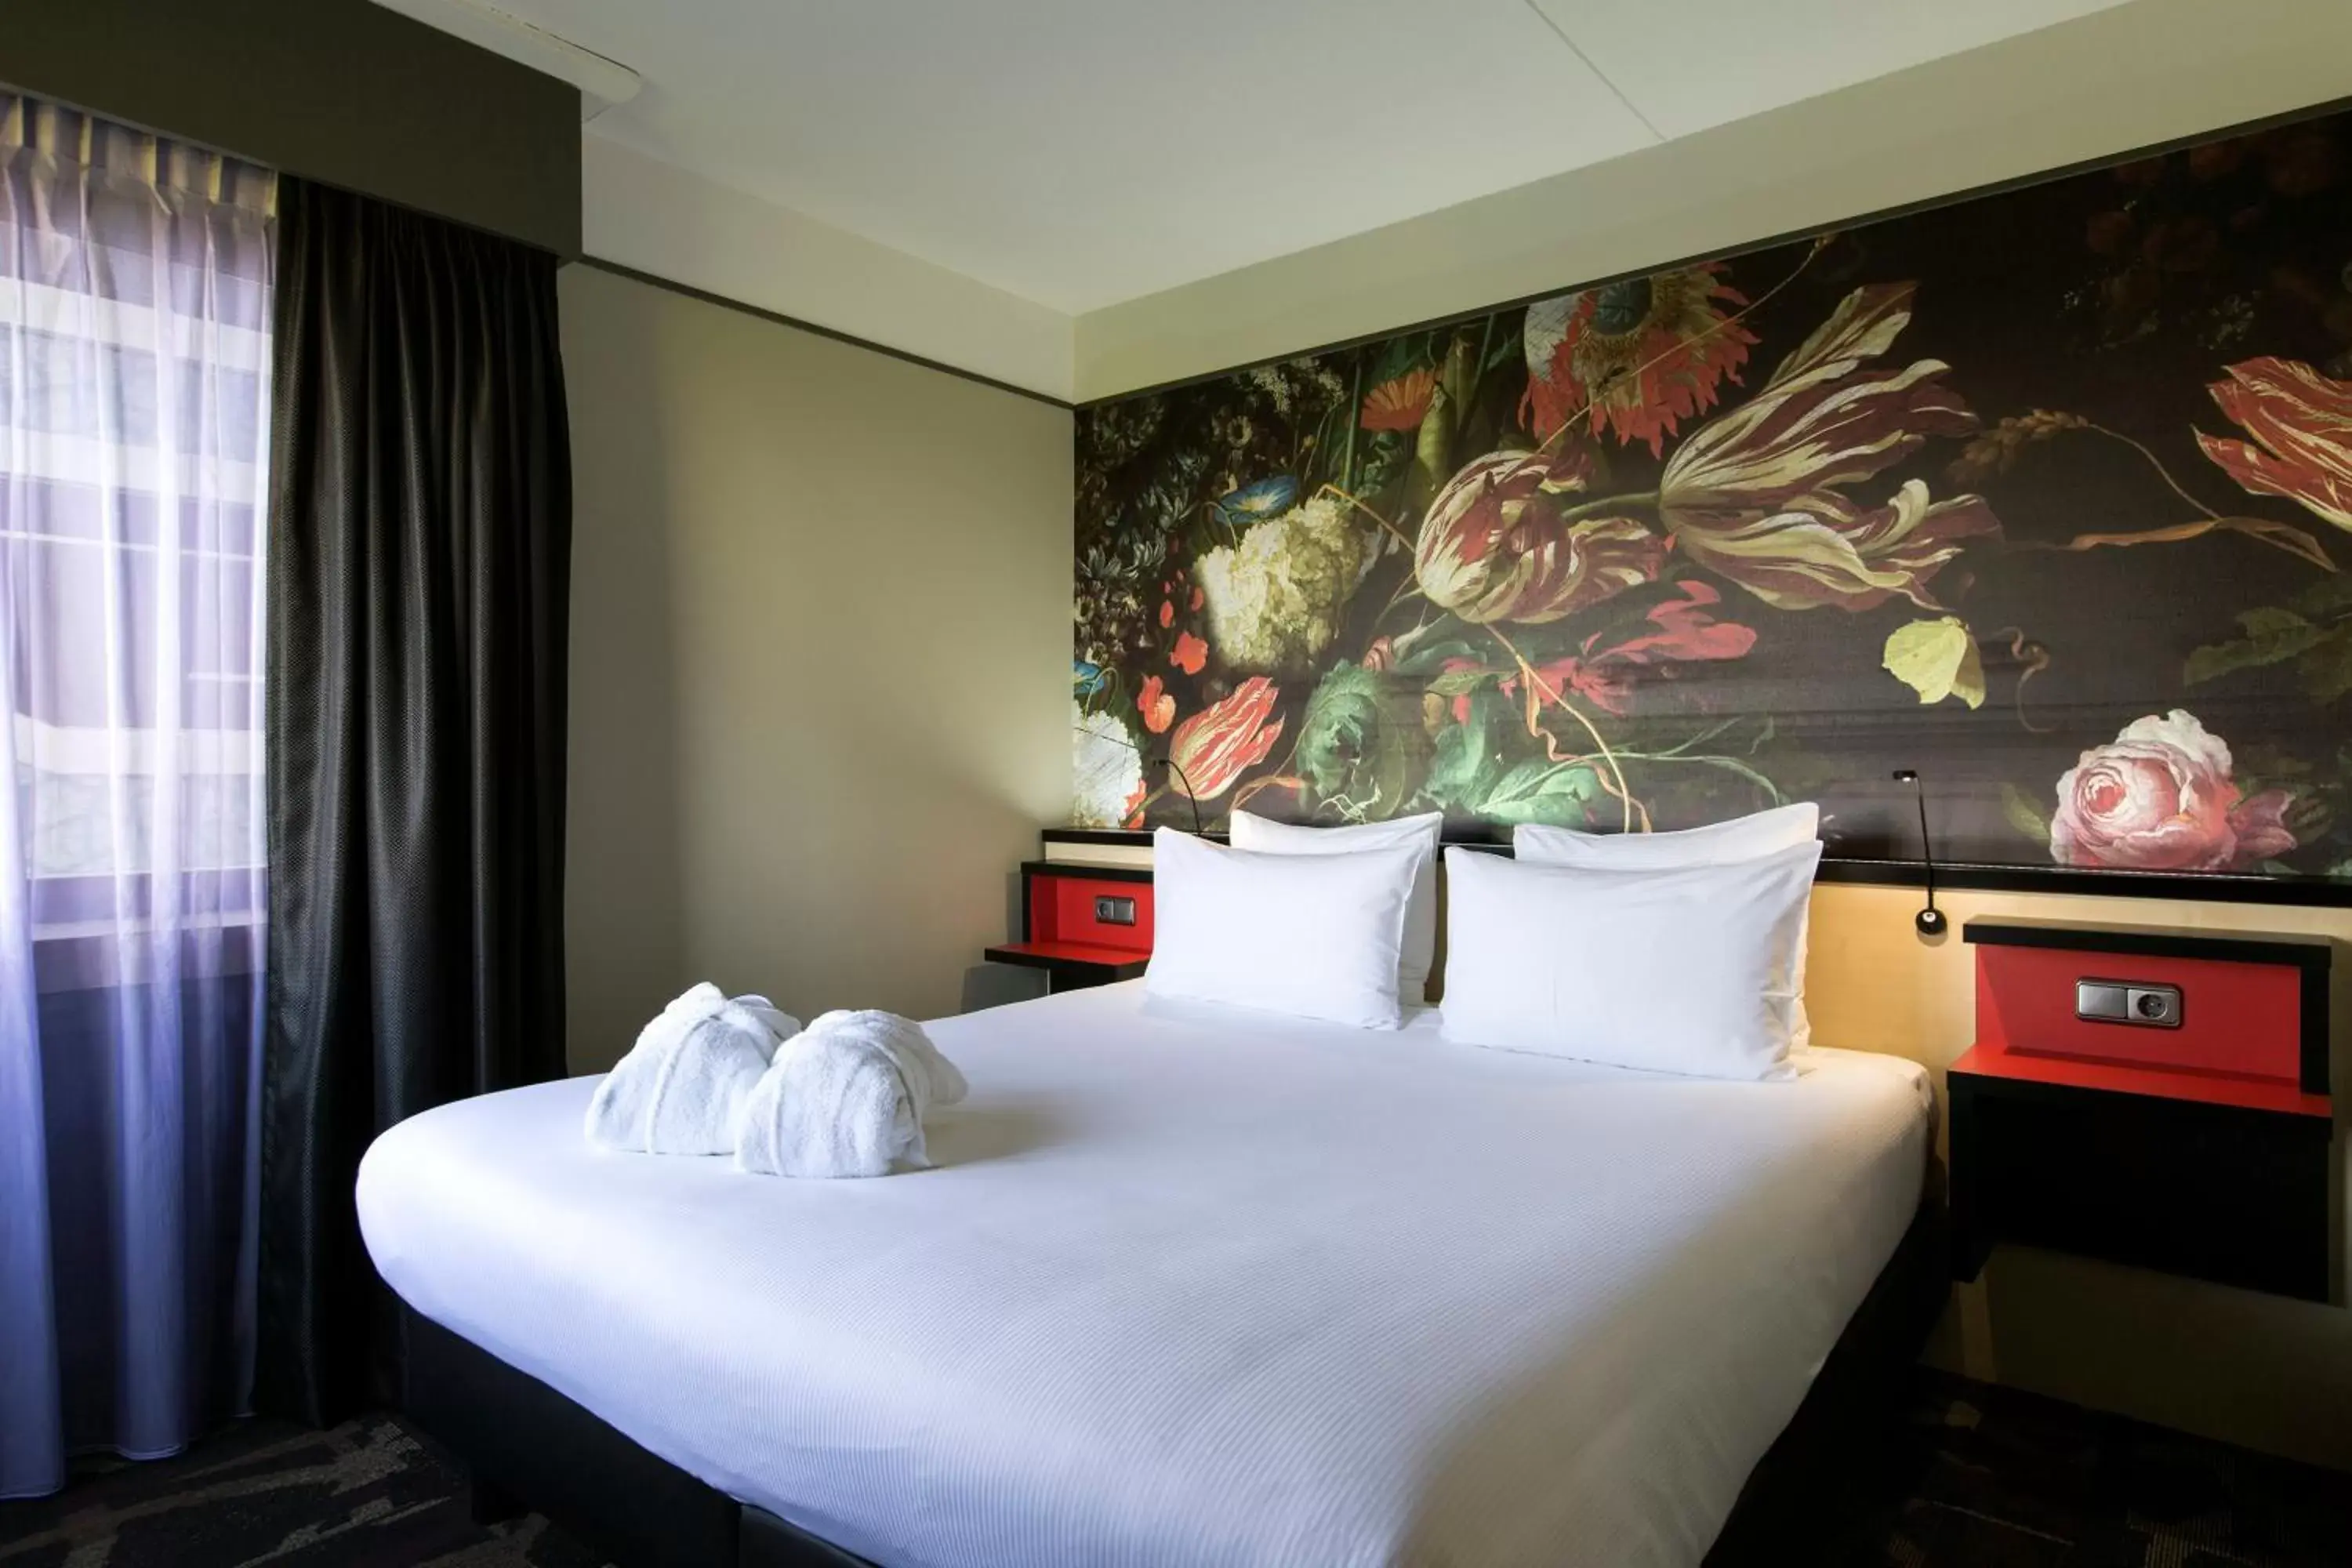 Decorative detail, Bed in Babylon Hotel Den Haag